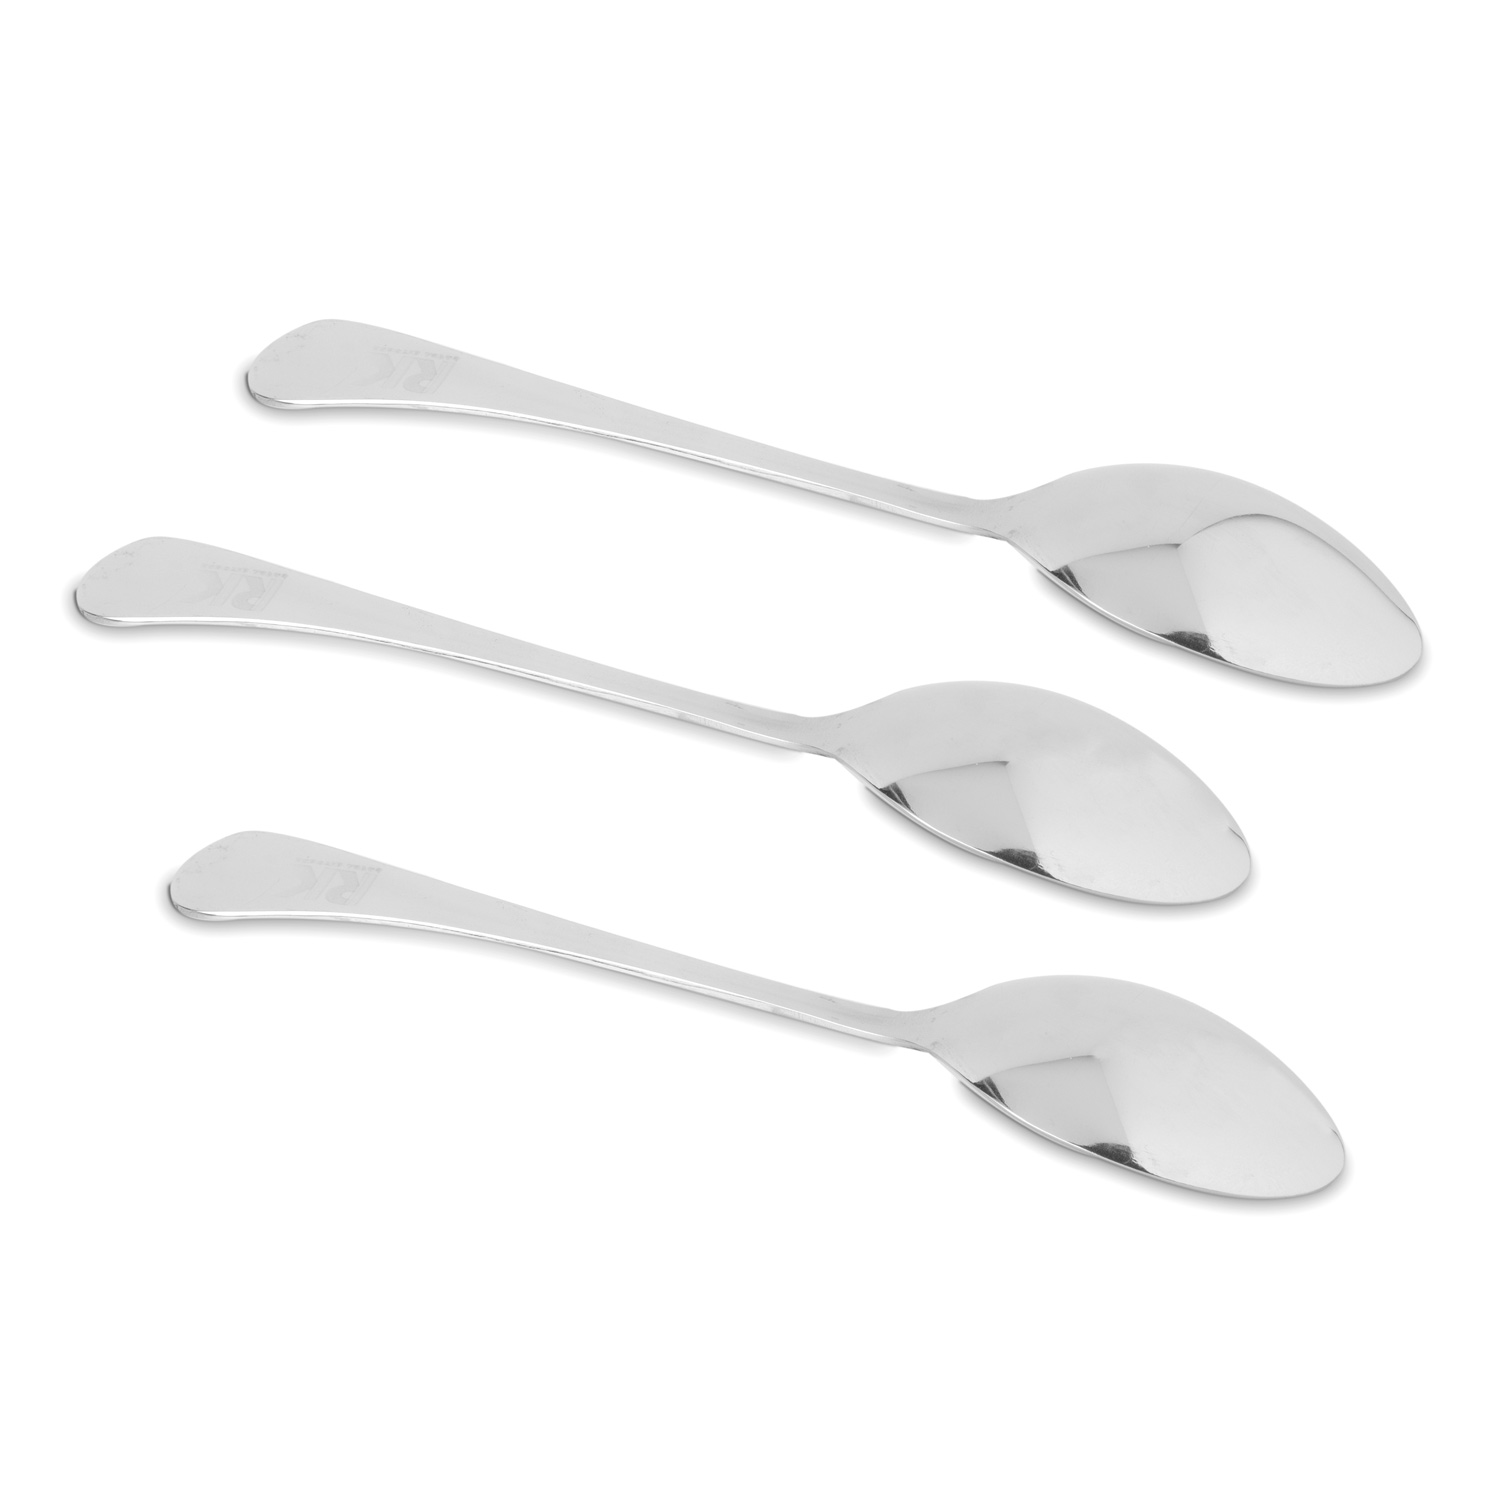 Rk S/S Table Spoon, Rk0100Ts, 3 Pc Pack, Venetian